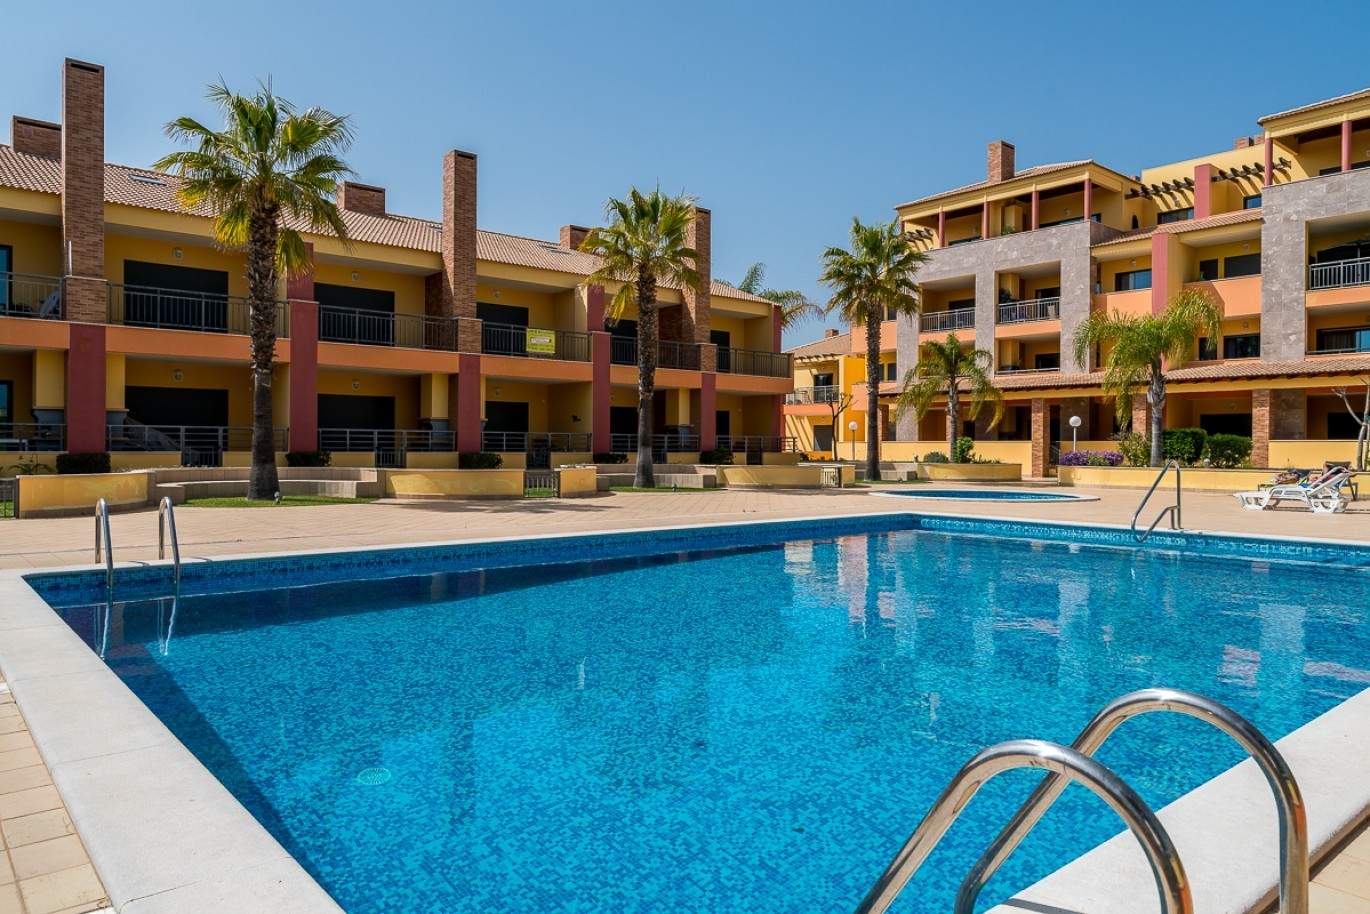 Wohnung zum Verkauf, pool, in der Nähe von Strand und golf, Vilamoura, Algarve, Portugal_78081